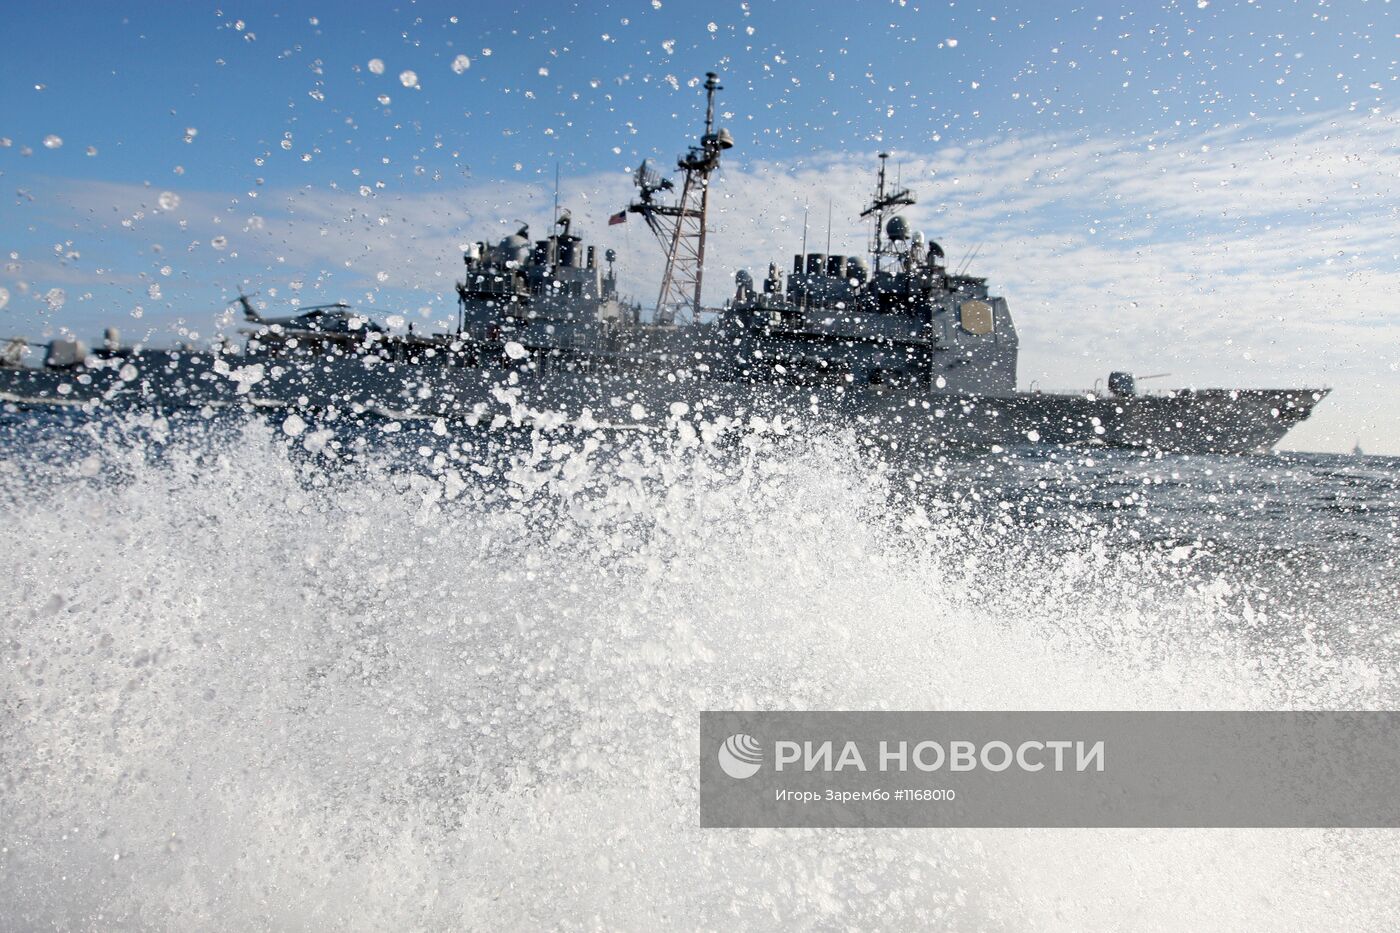 Международные военно-морские учения "Фрукус-2012"